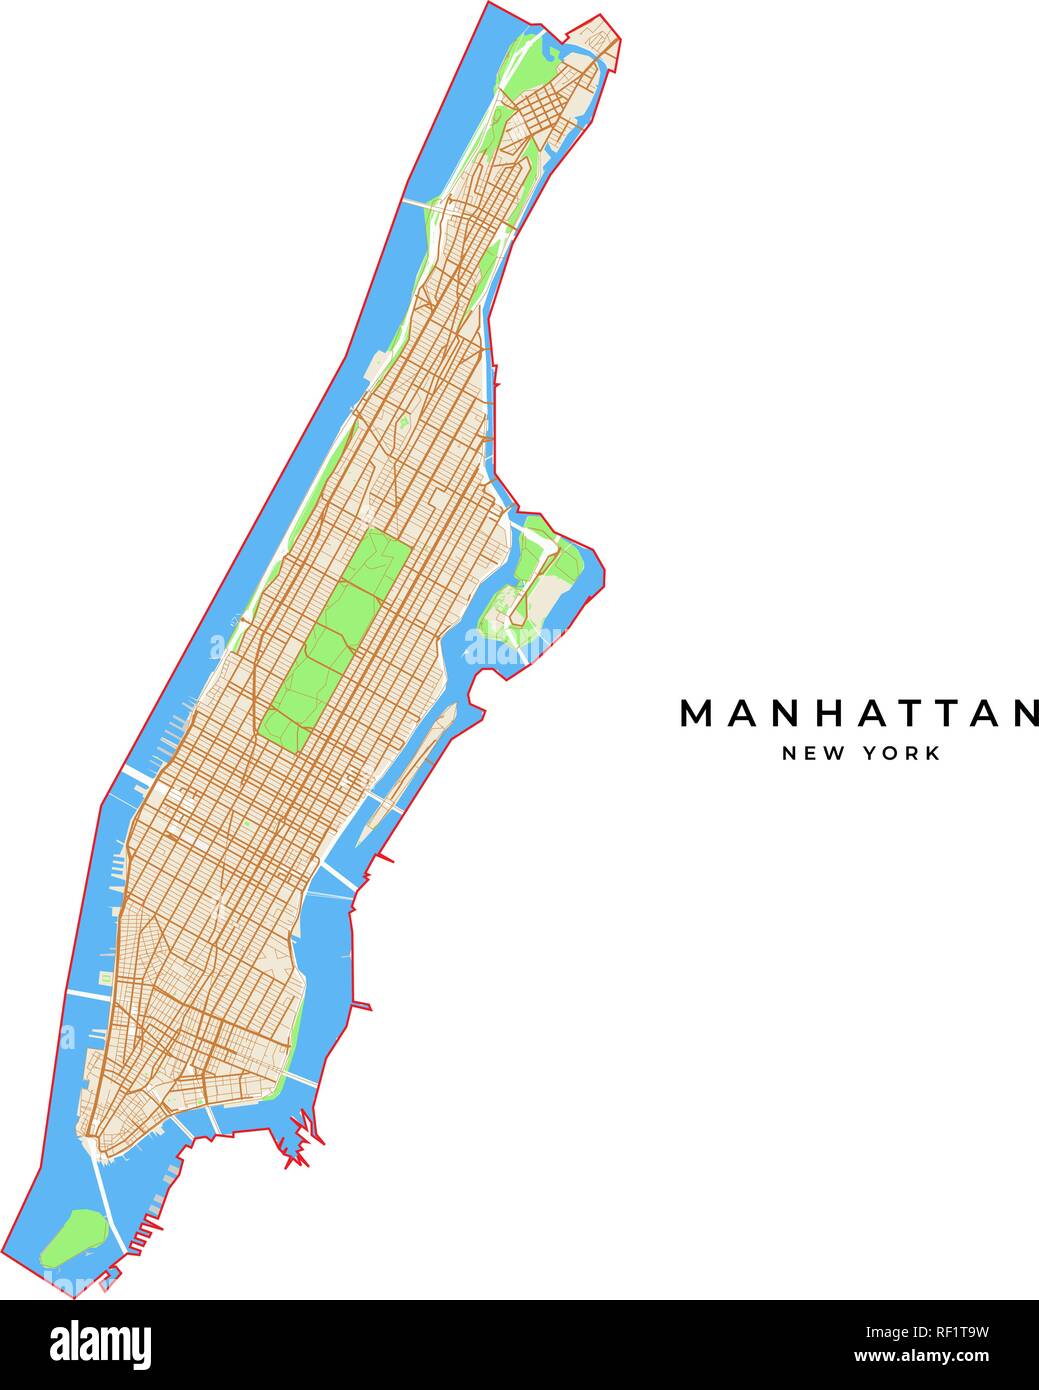 Vektorkarte von Manhattan, New York, USA. Verschiedene Farben für Straßen, Parks, Wasser und Grenze. Stock Vektor